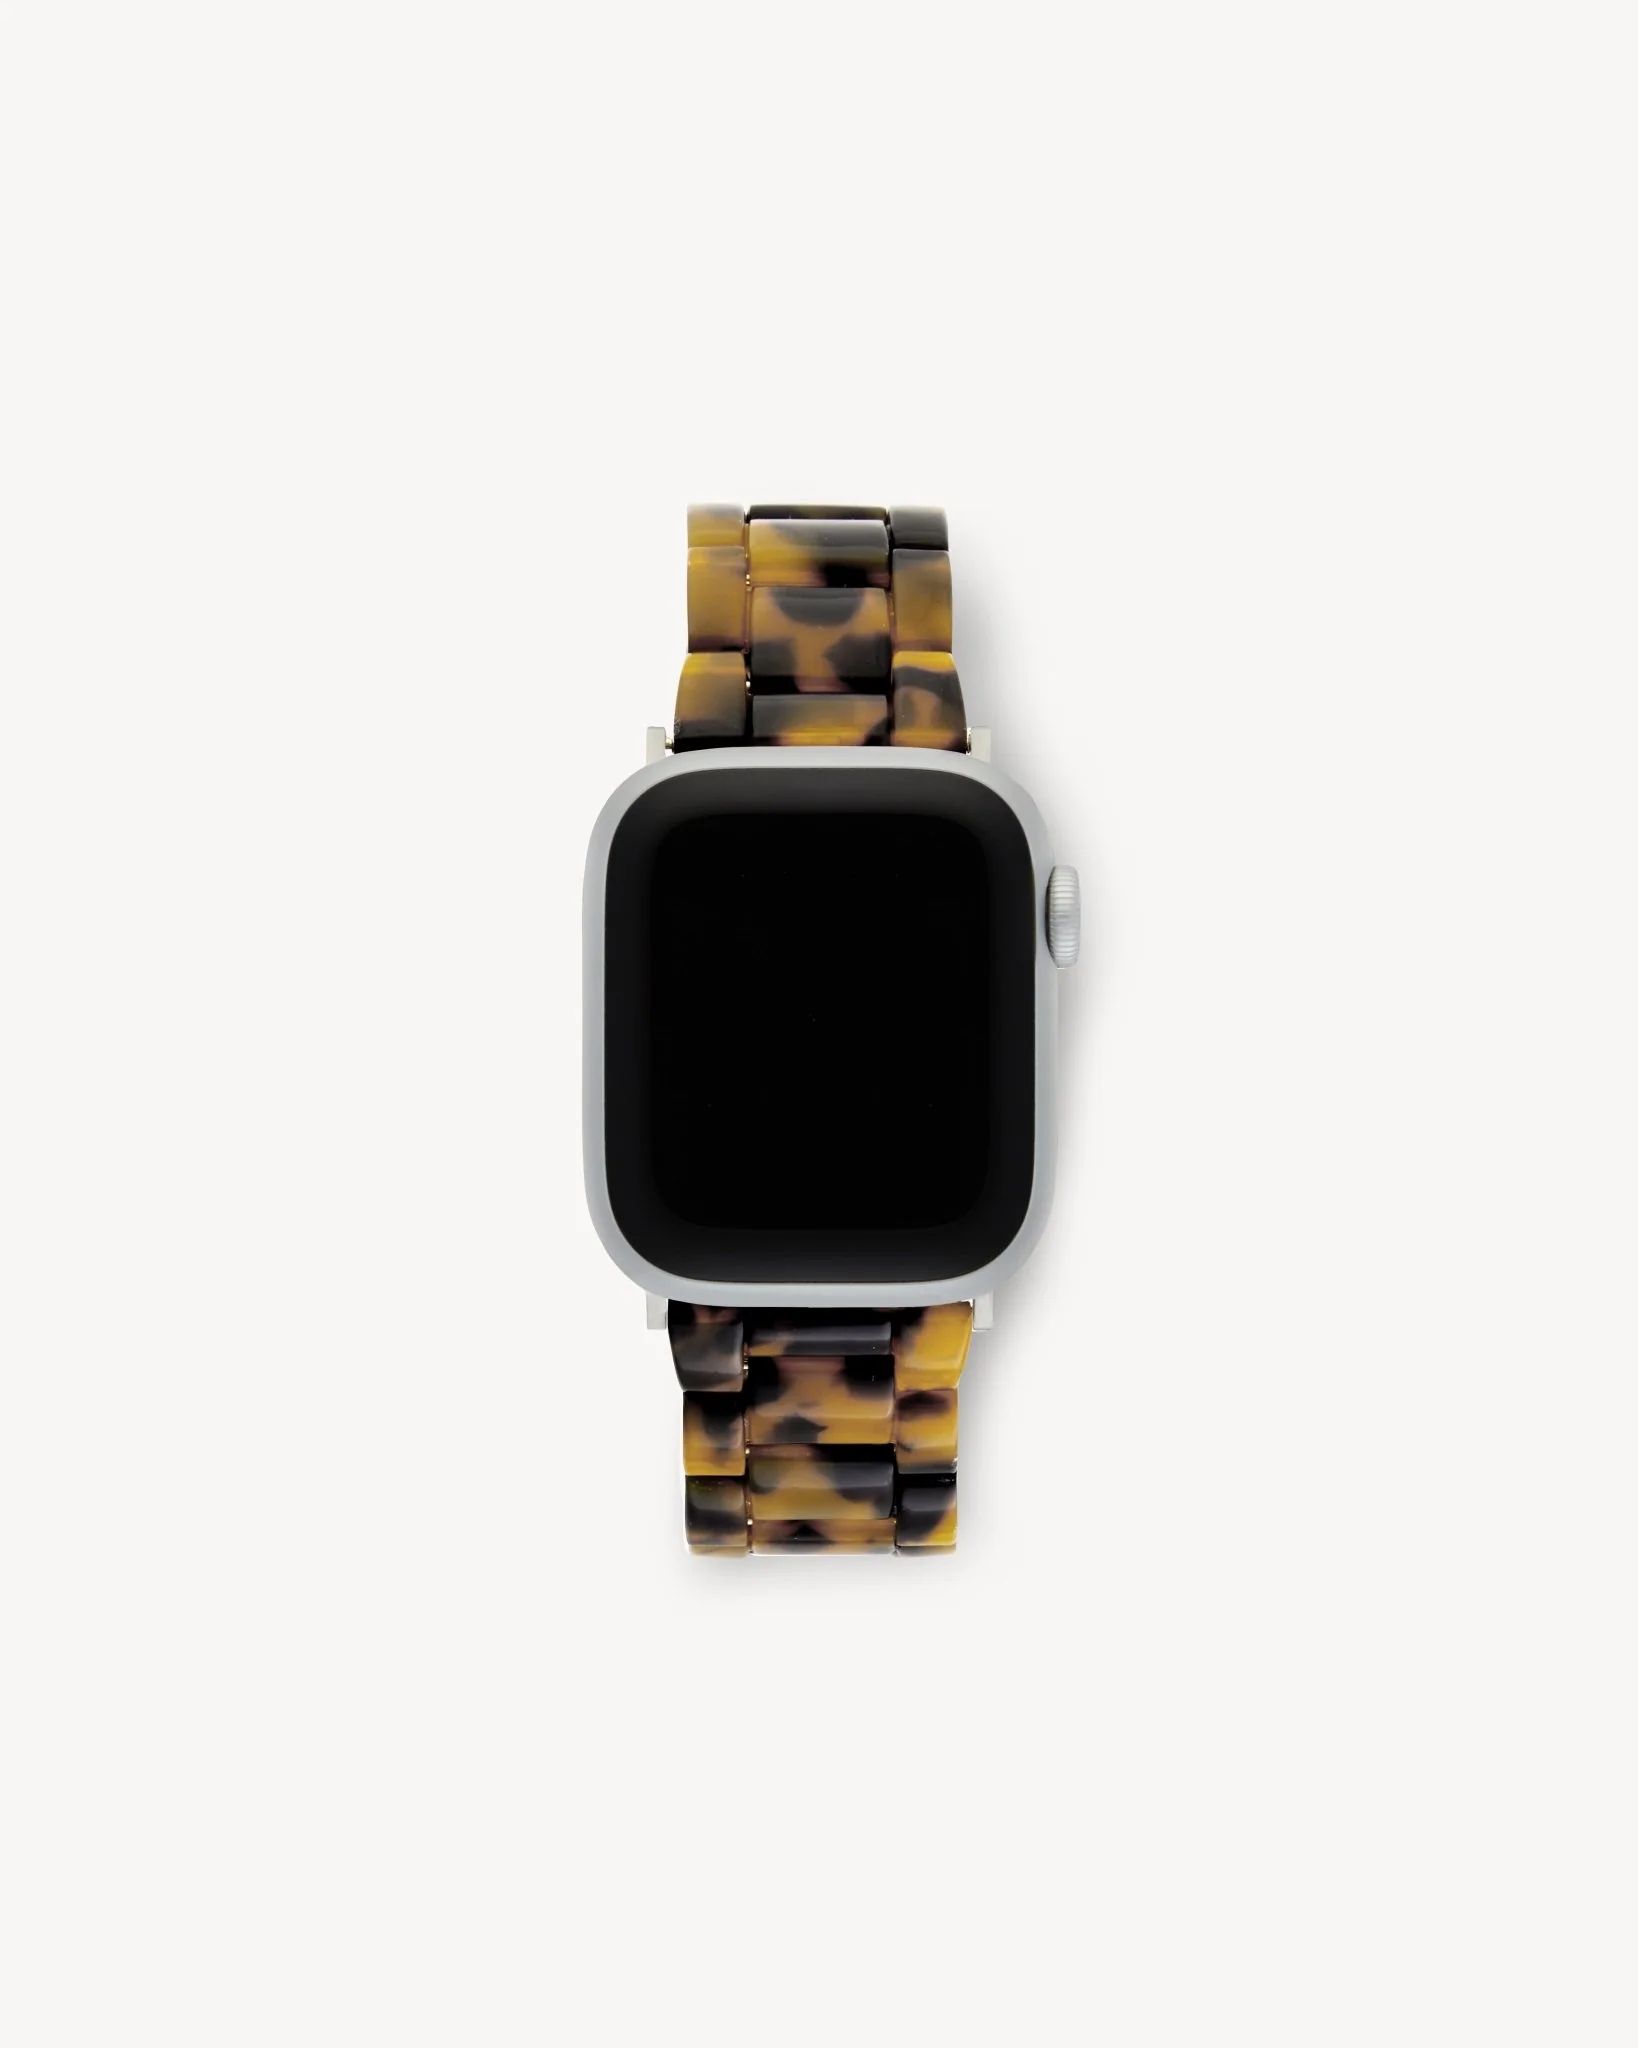 Apple Watch Band in Classic Tortoise | Machete Jewelry | Machete